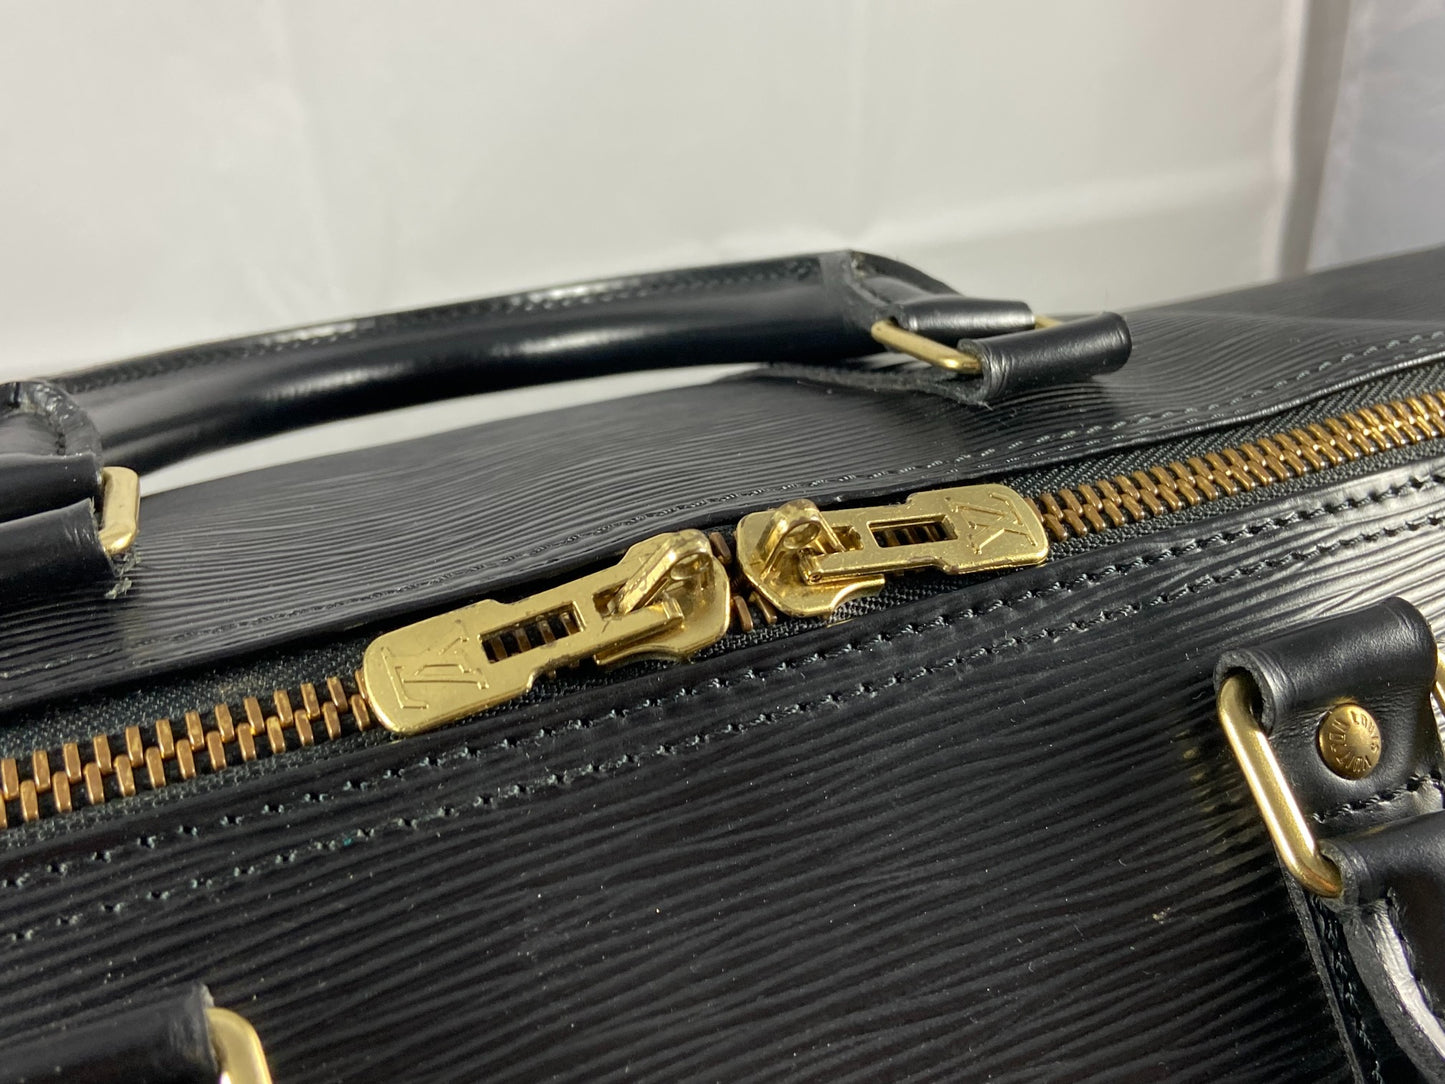 Louis Vuitton Keepall 55 Black Epi Leather